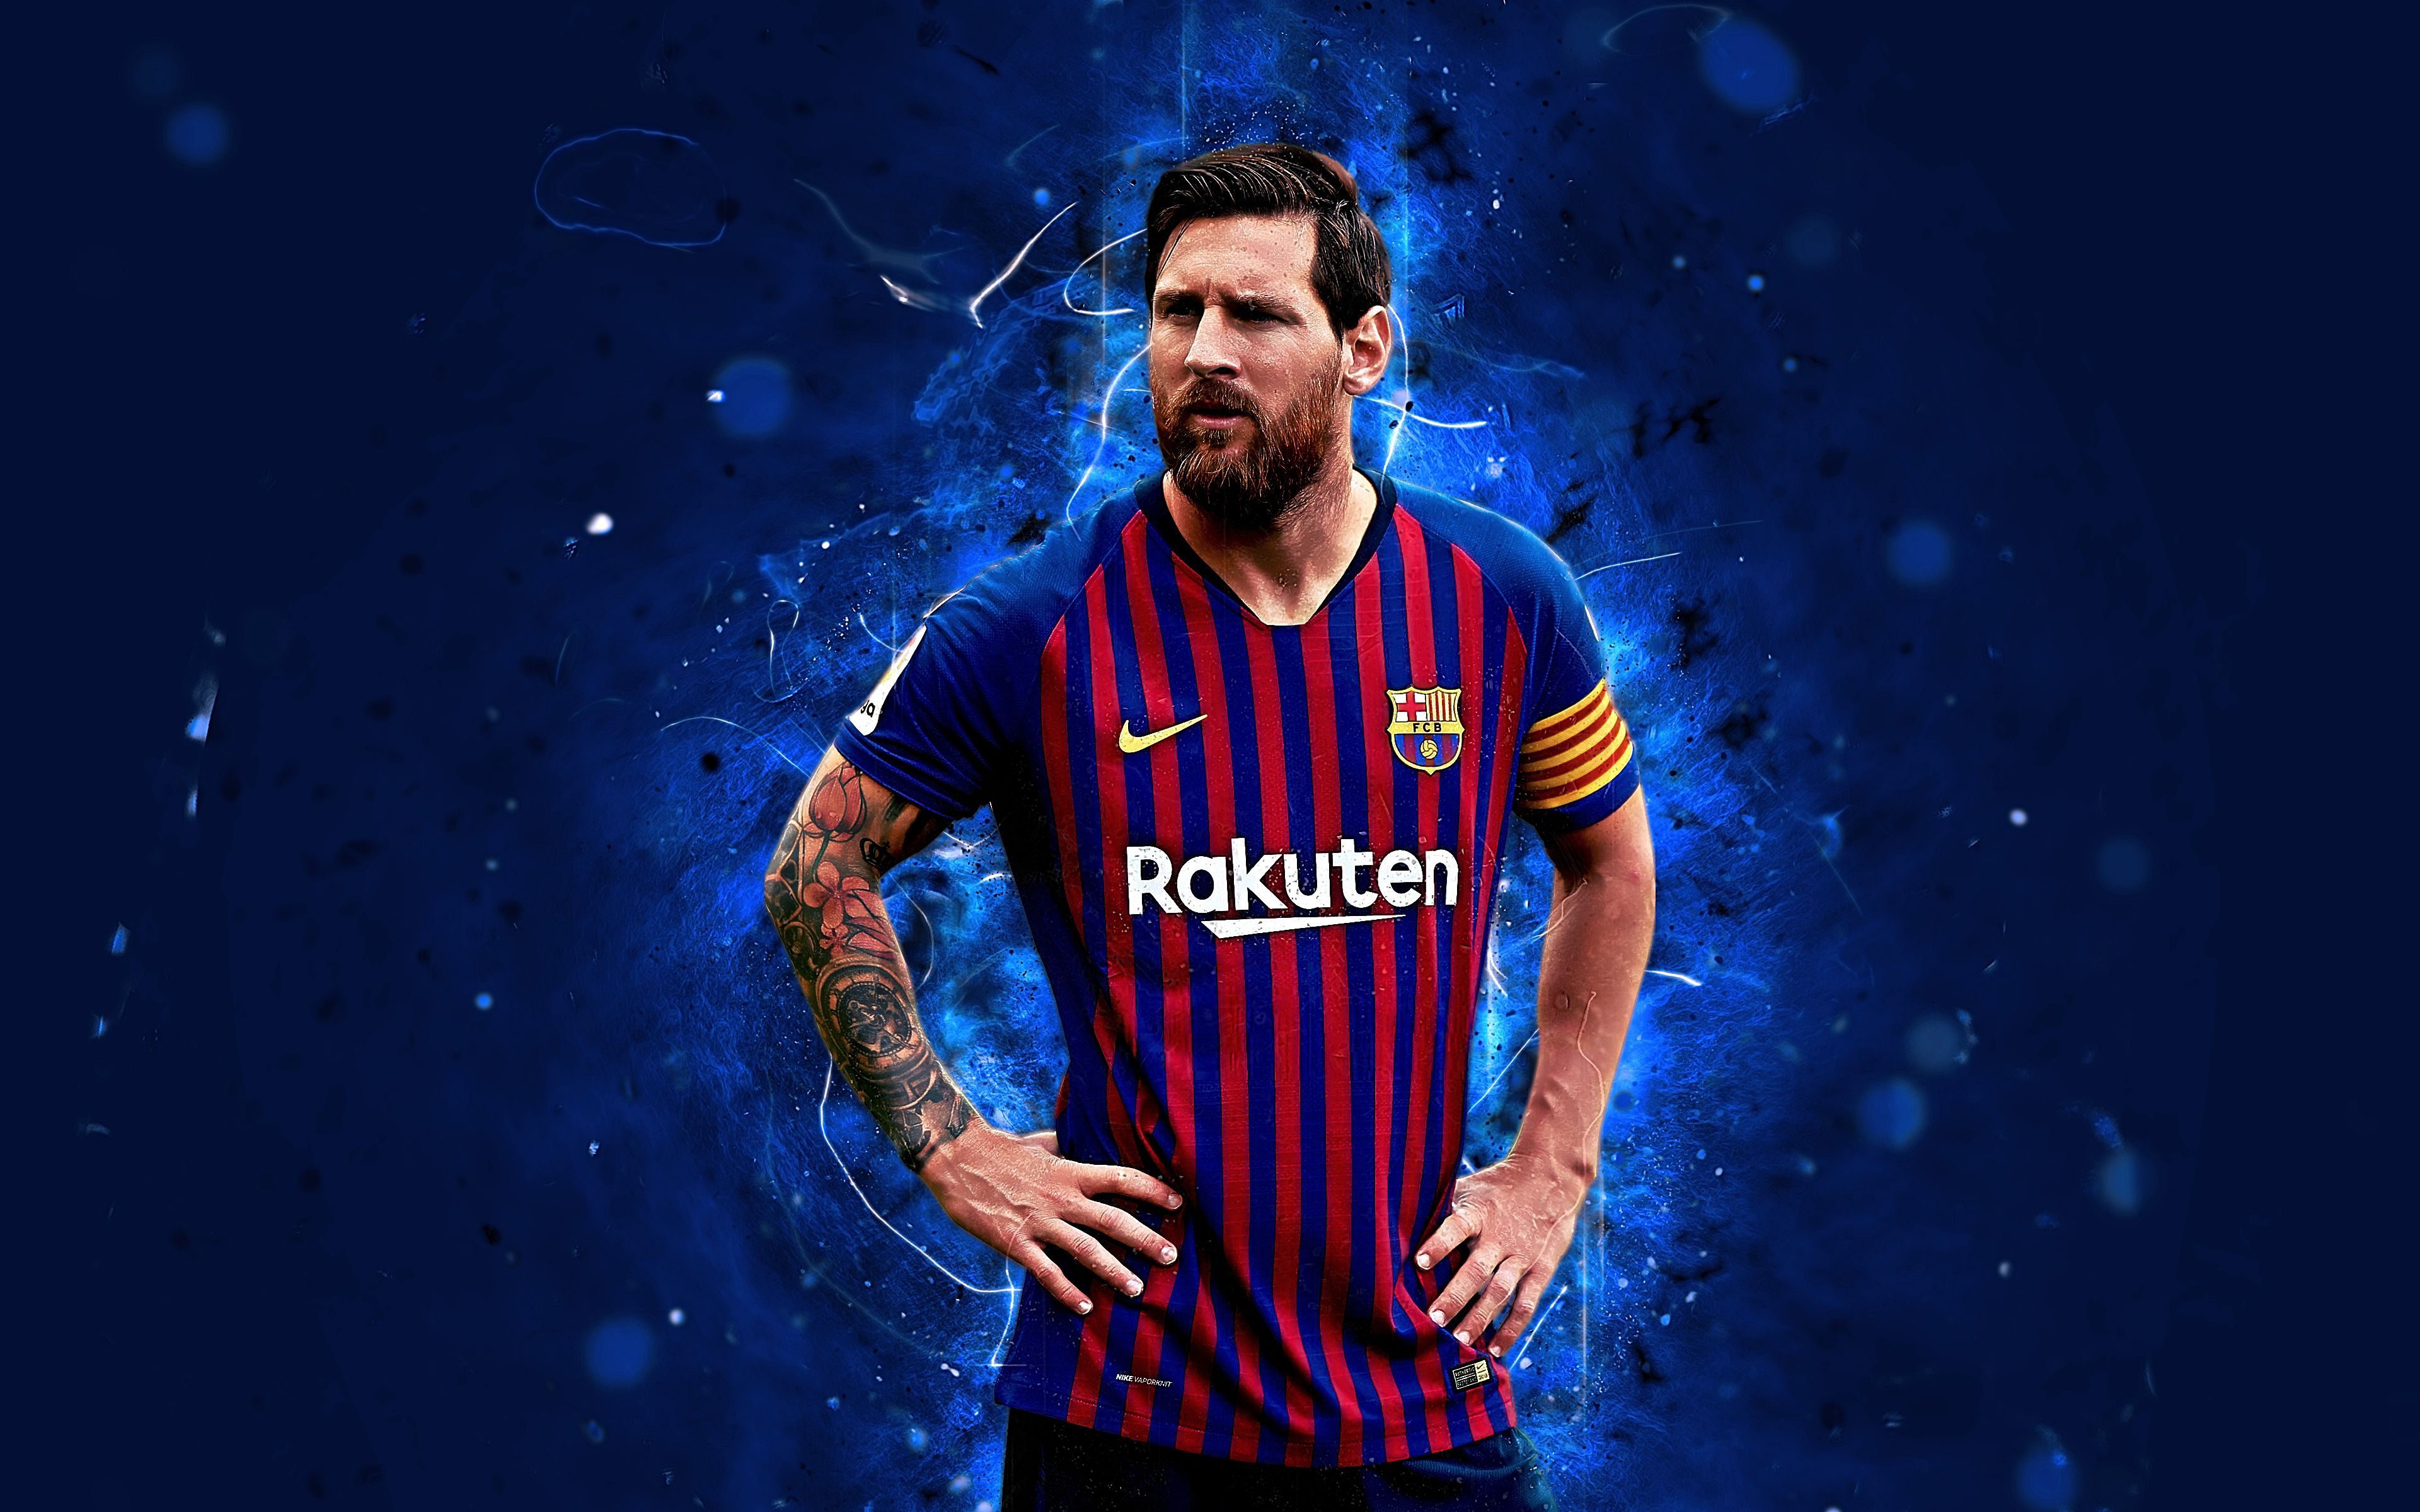 Bộ sưu tập ảnh Messi 4K với chất lượng hình ảnh chân thực và sắc nét, sẽ đưa bạn vào trải nghiệm hoàn toàn mới về thế giới của siêu sao bóng đá Lionel Messi. Với 4K, của sổ điện thoại, bạn có thể nhìn thấy Messi như chưa bao giờ thấy trước đây.